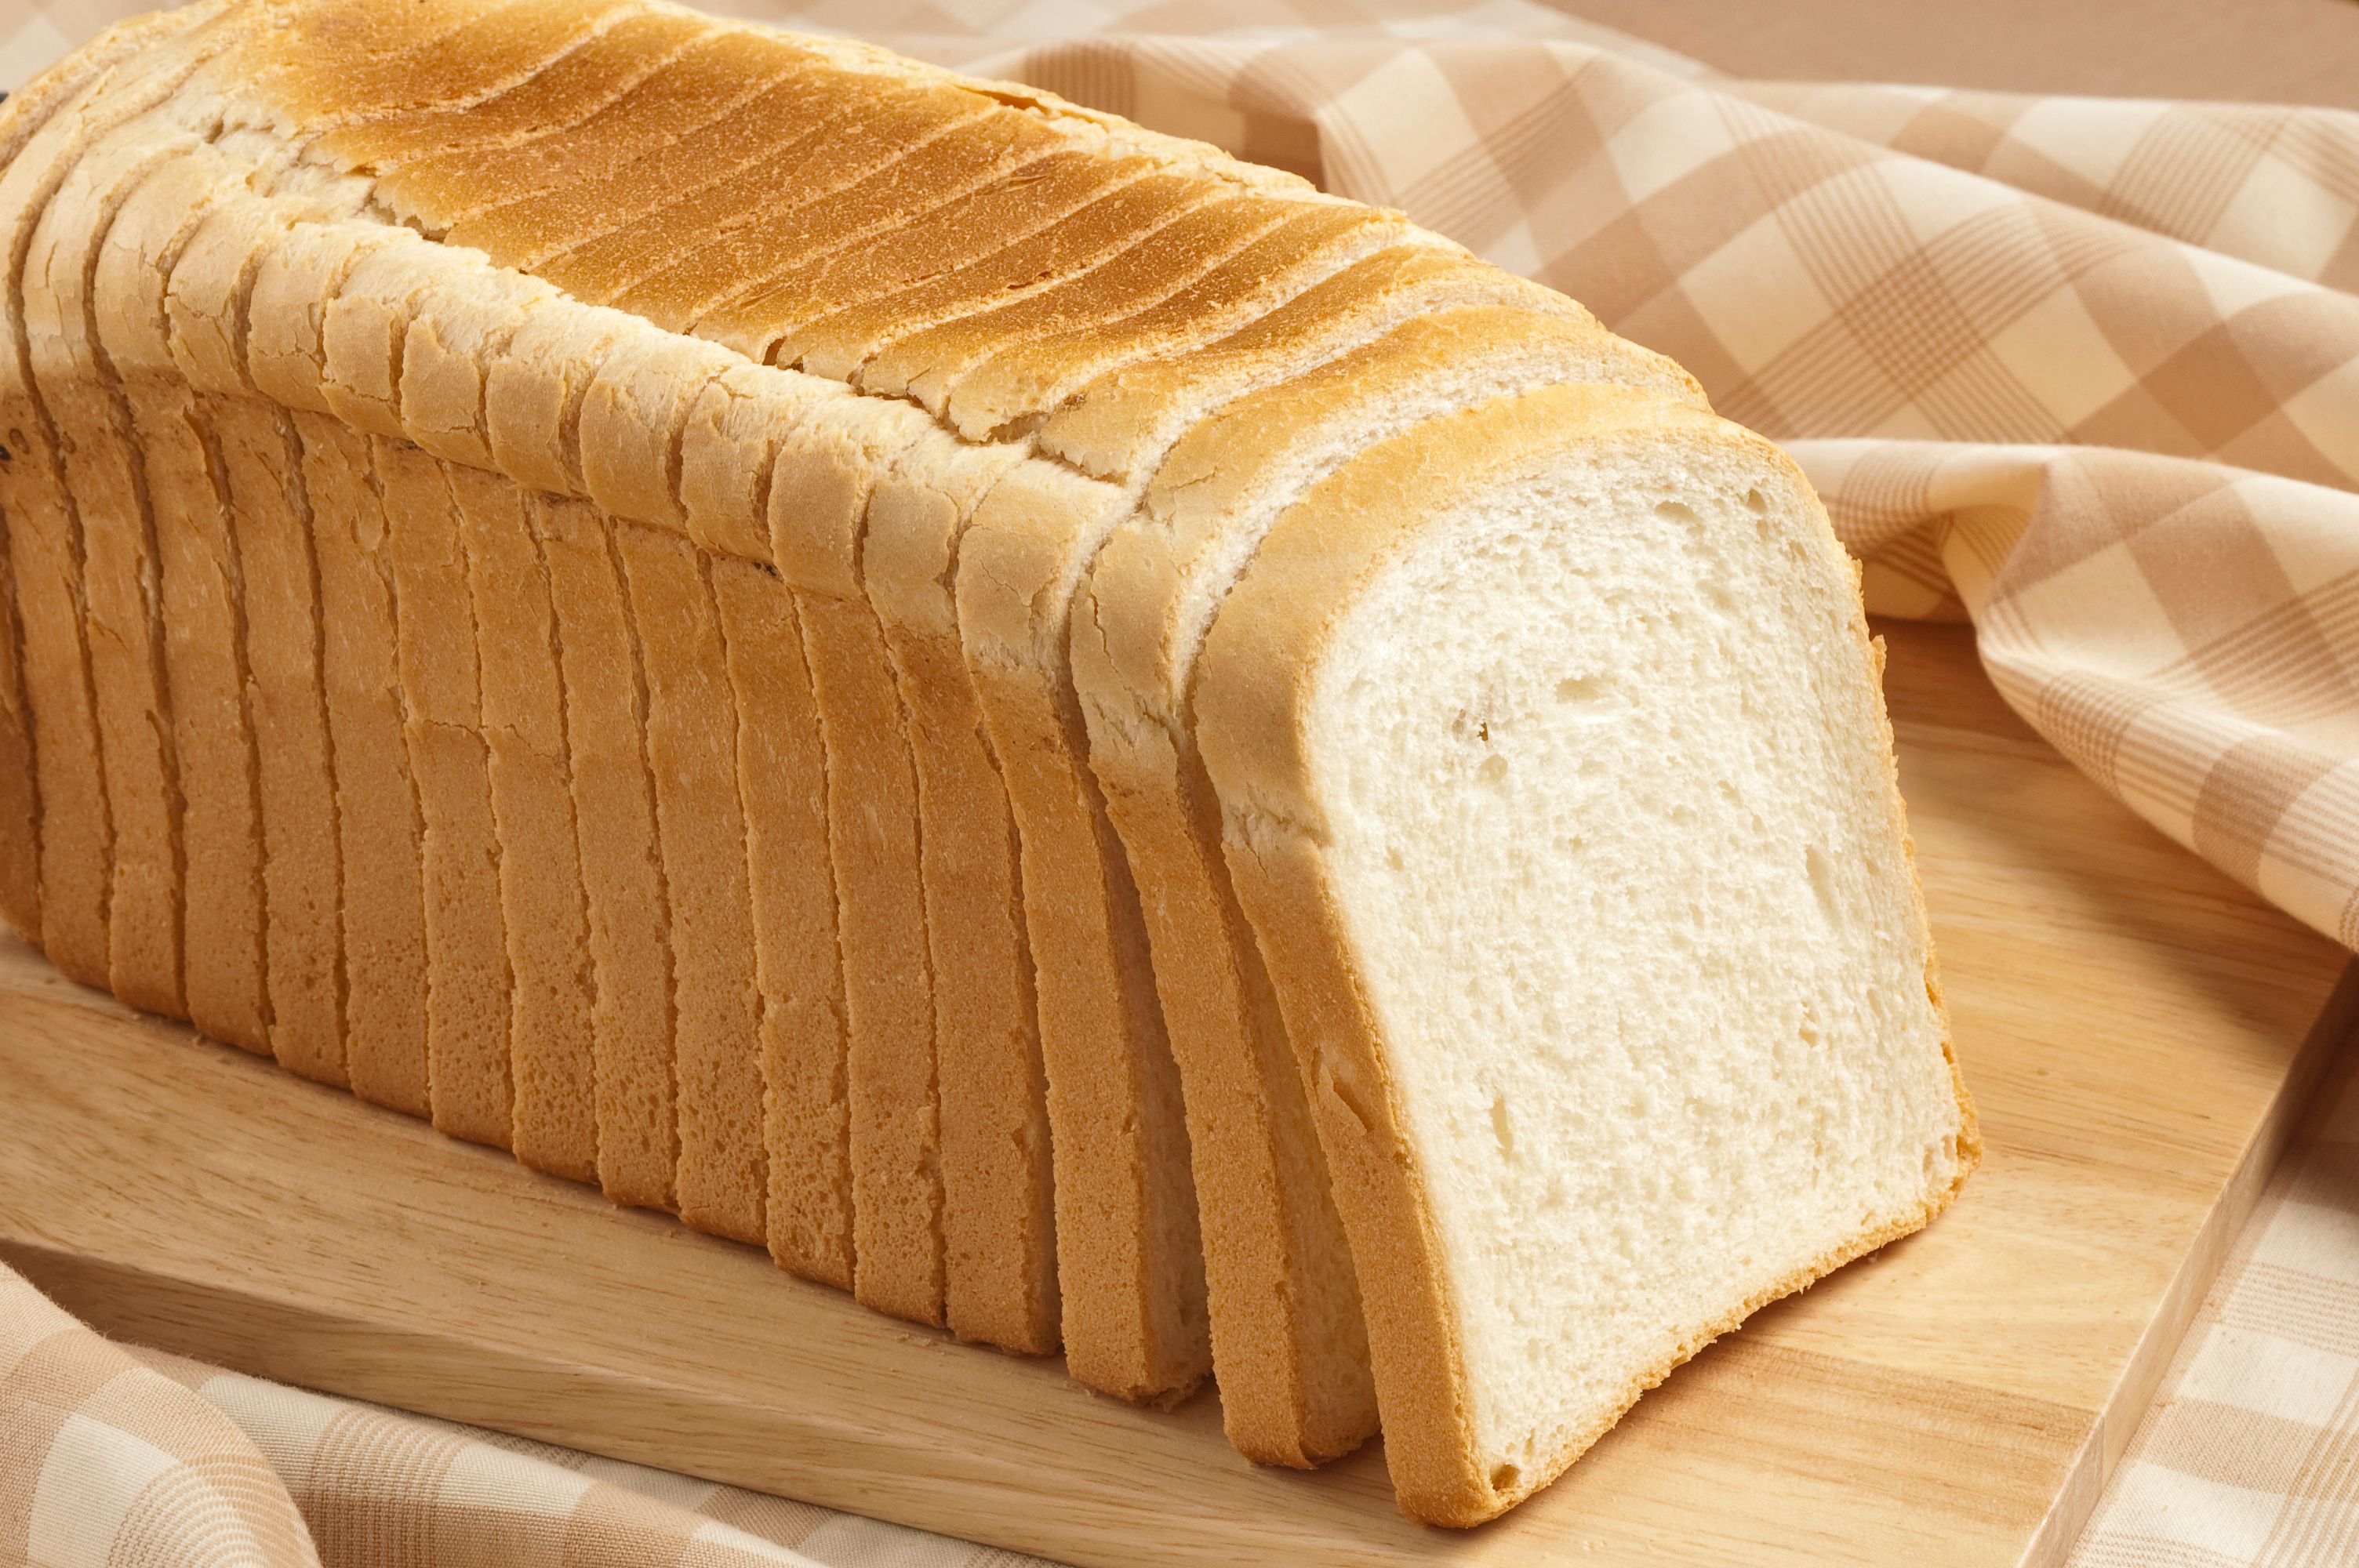 Бел пан. Хлеб. Белый хлеб. Нарезанный хлеб. Прямоугольный хлеб.